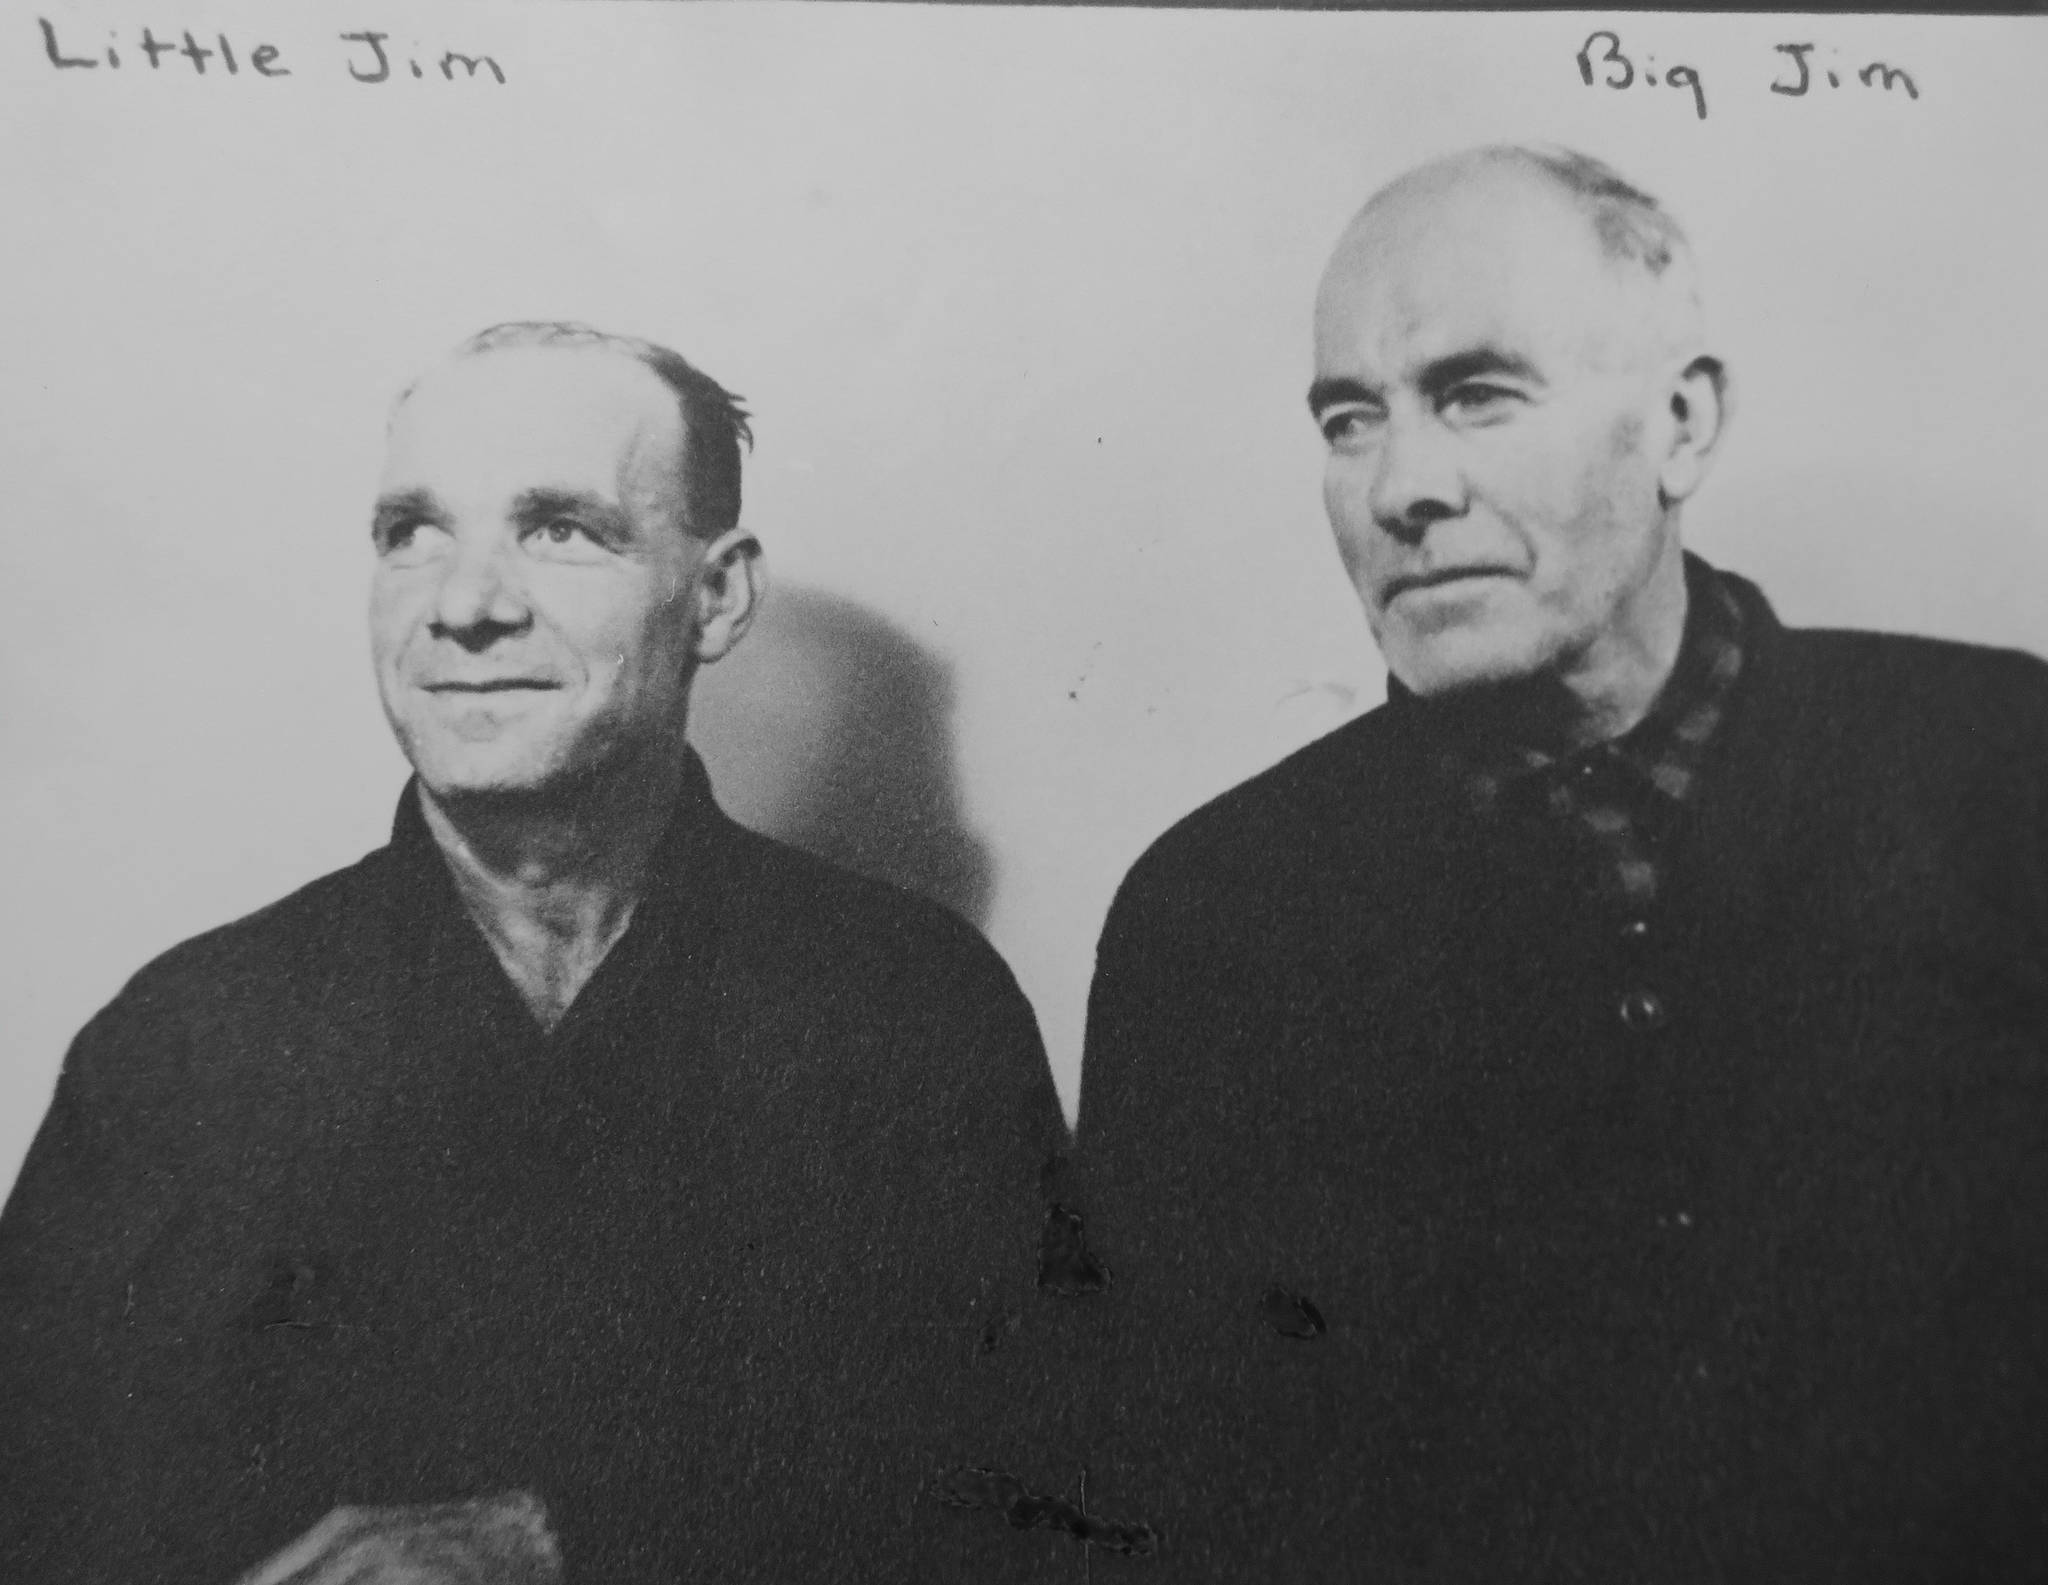 James “Little Jim” Dunmire (left) and James “Big Jim” O’Brien. (Photo courtesy of Mona Painter)